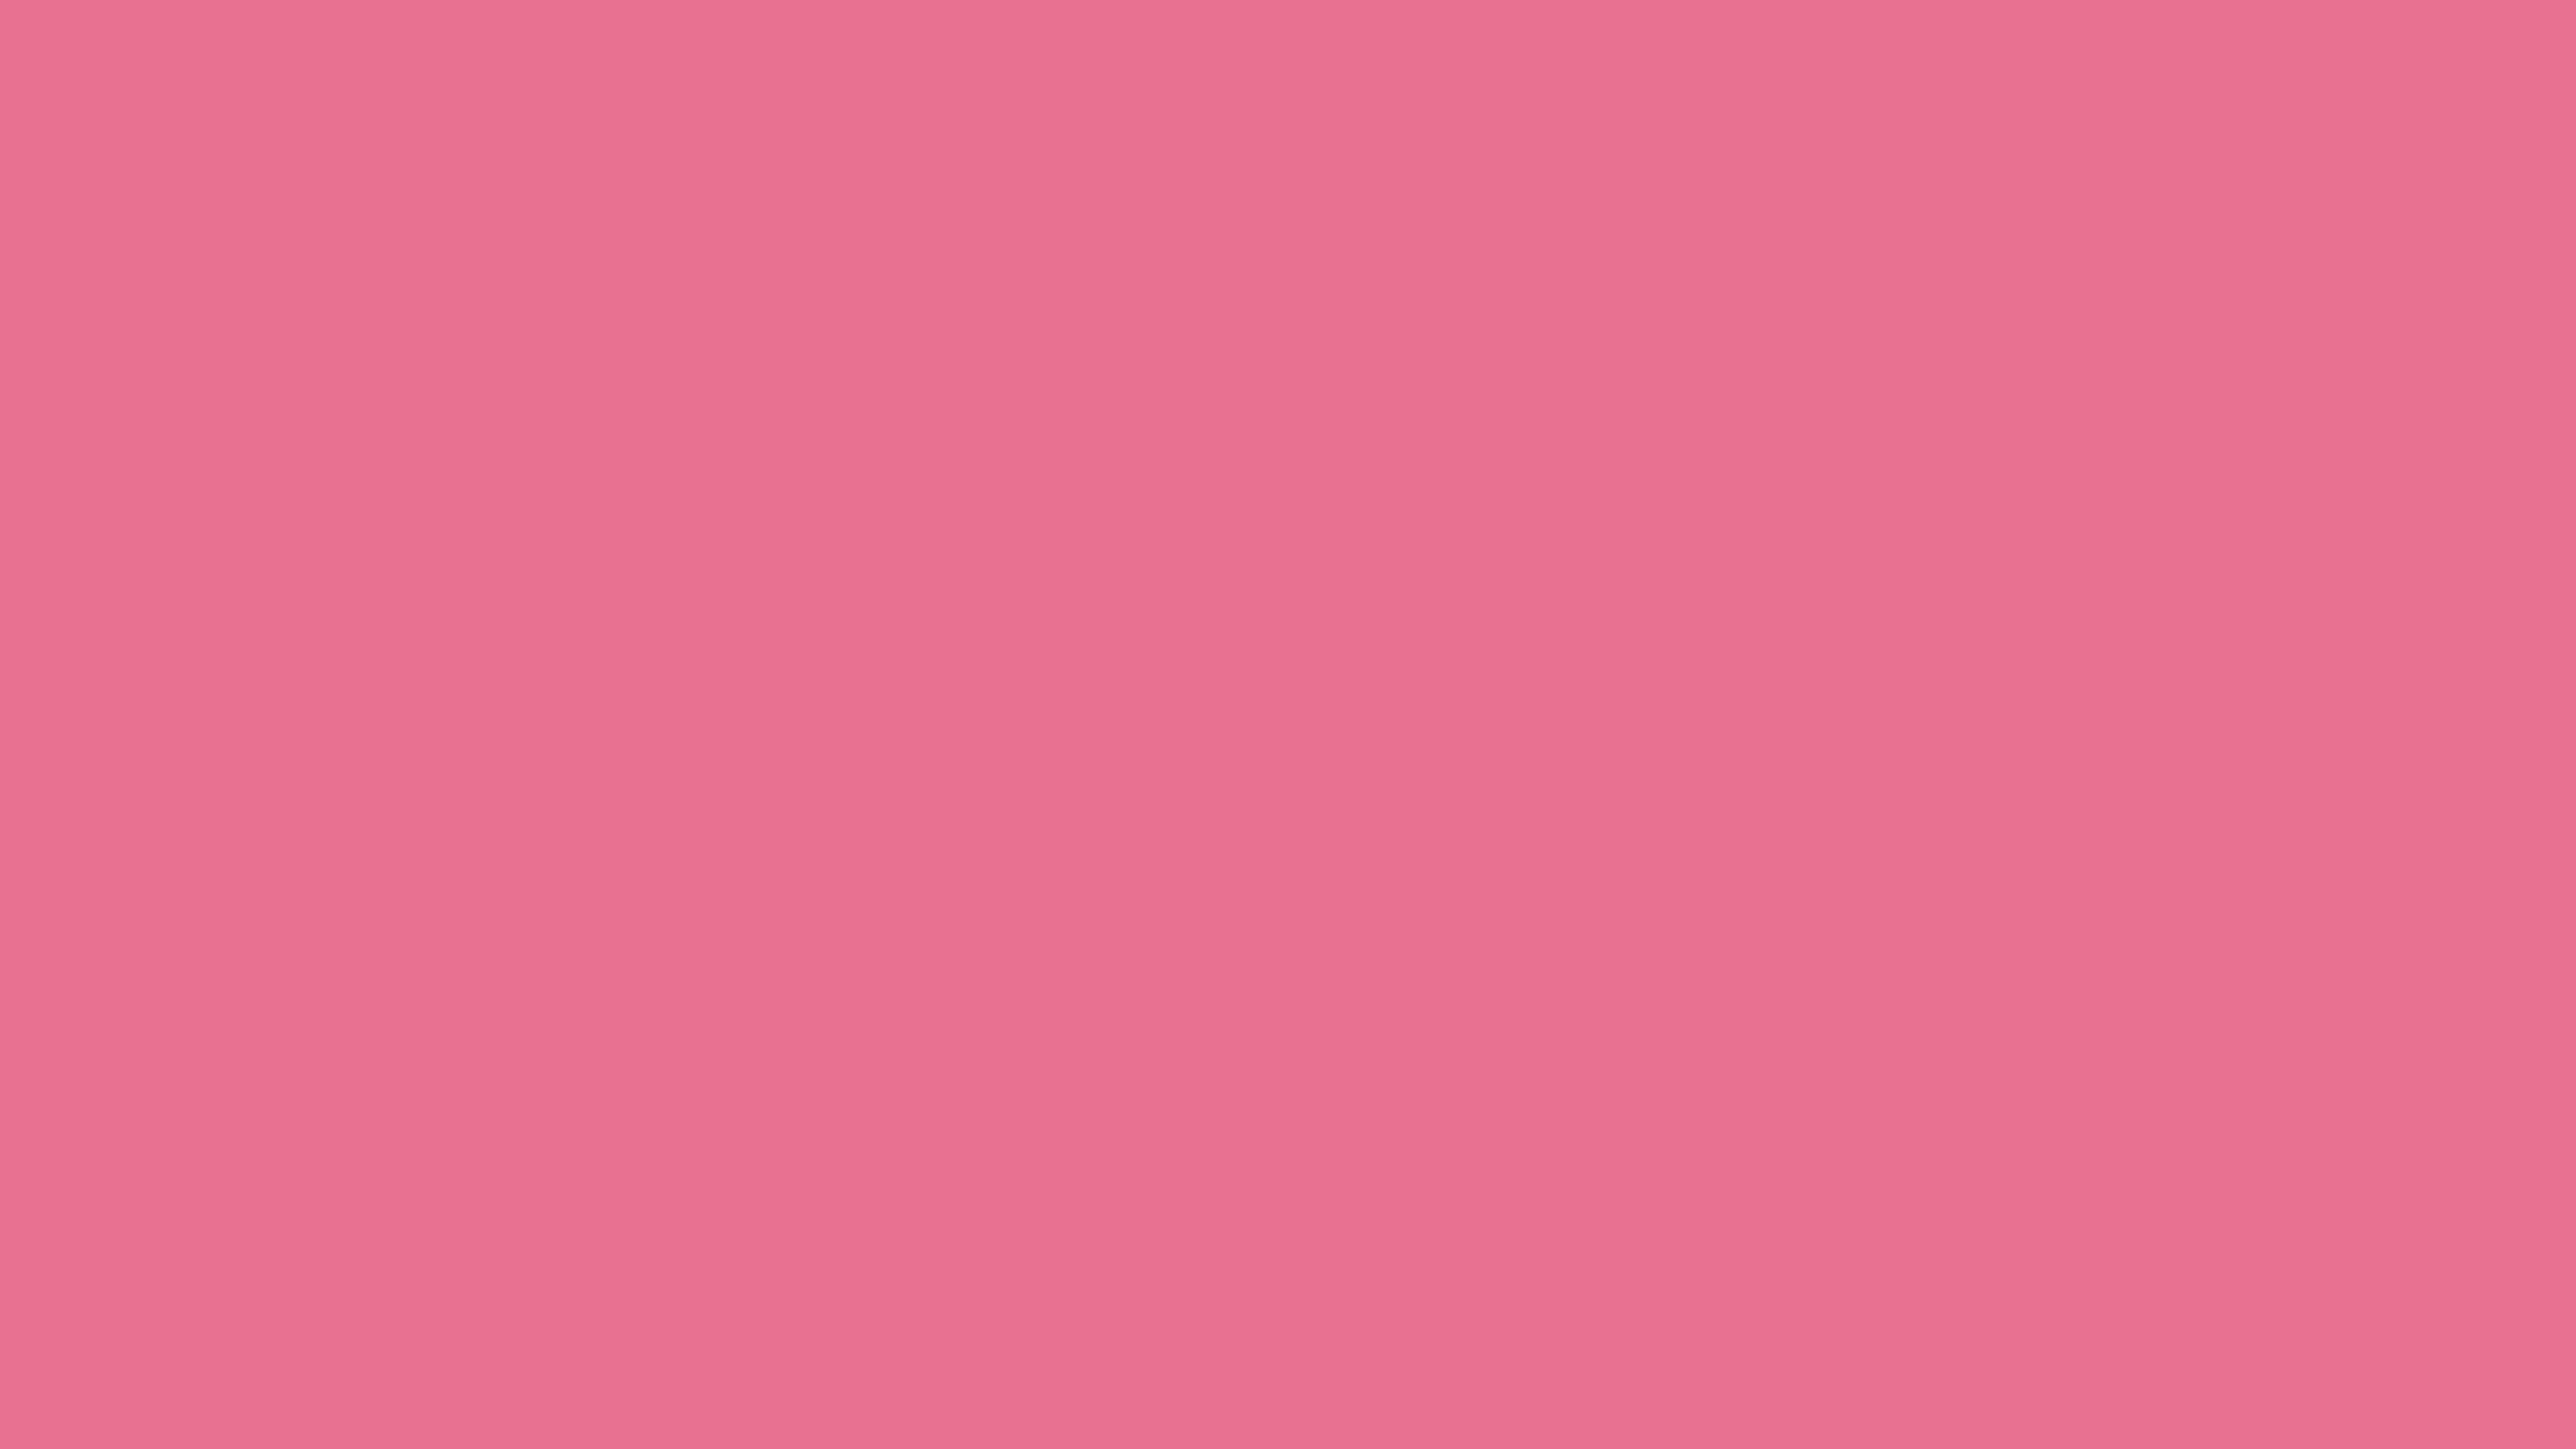 10. "Bubblegum Pink" - wide 2